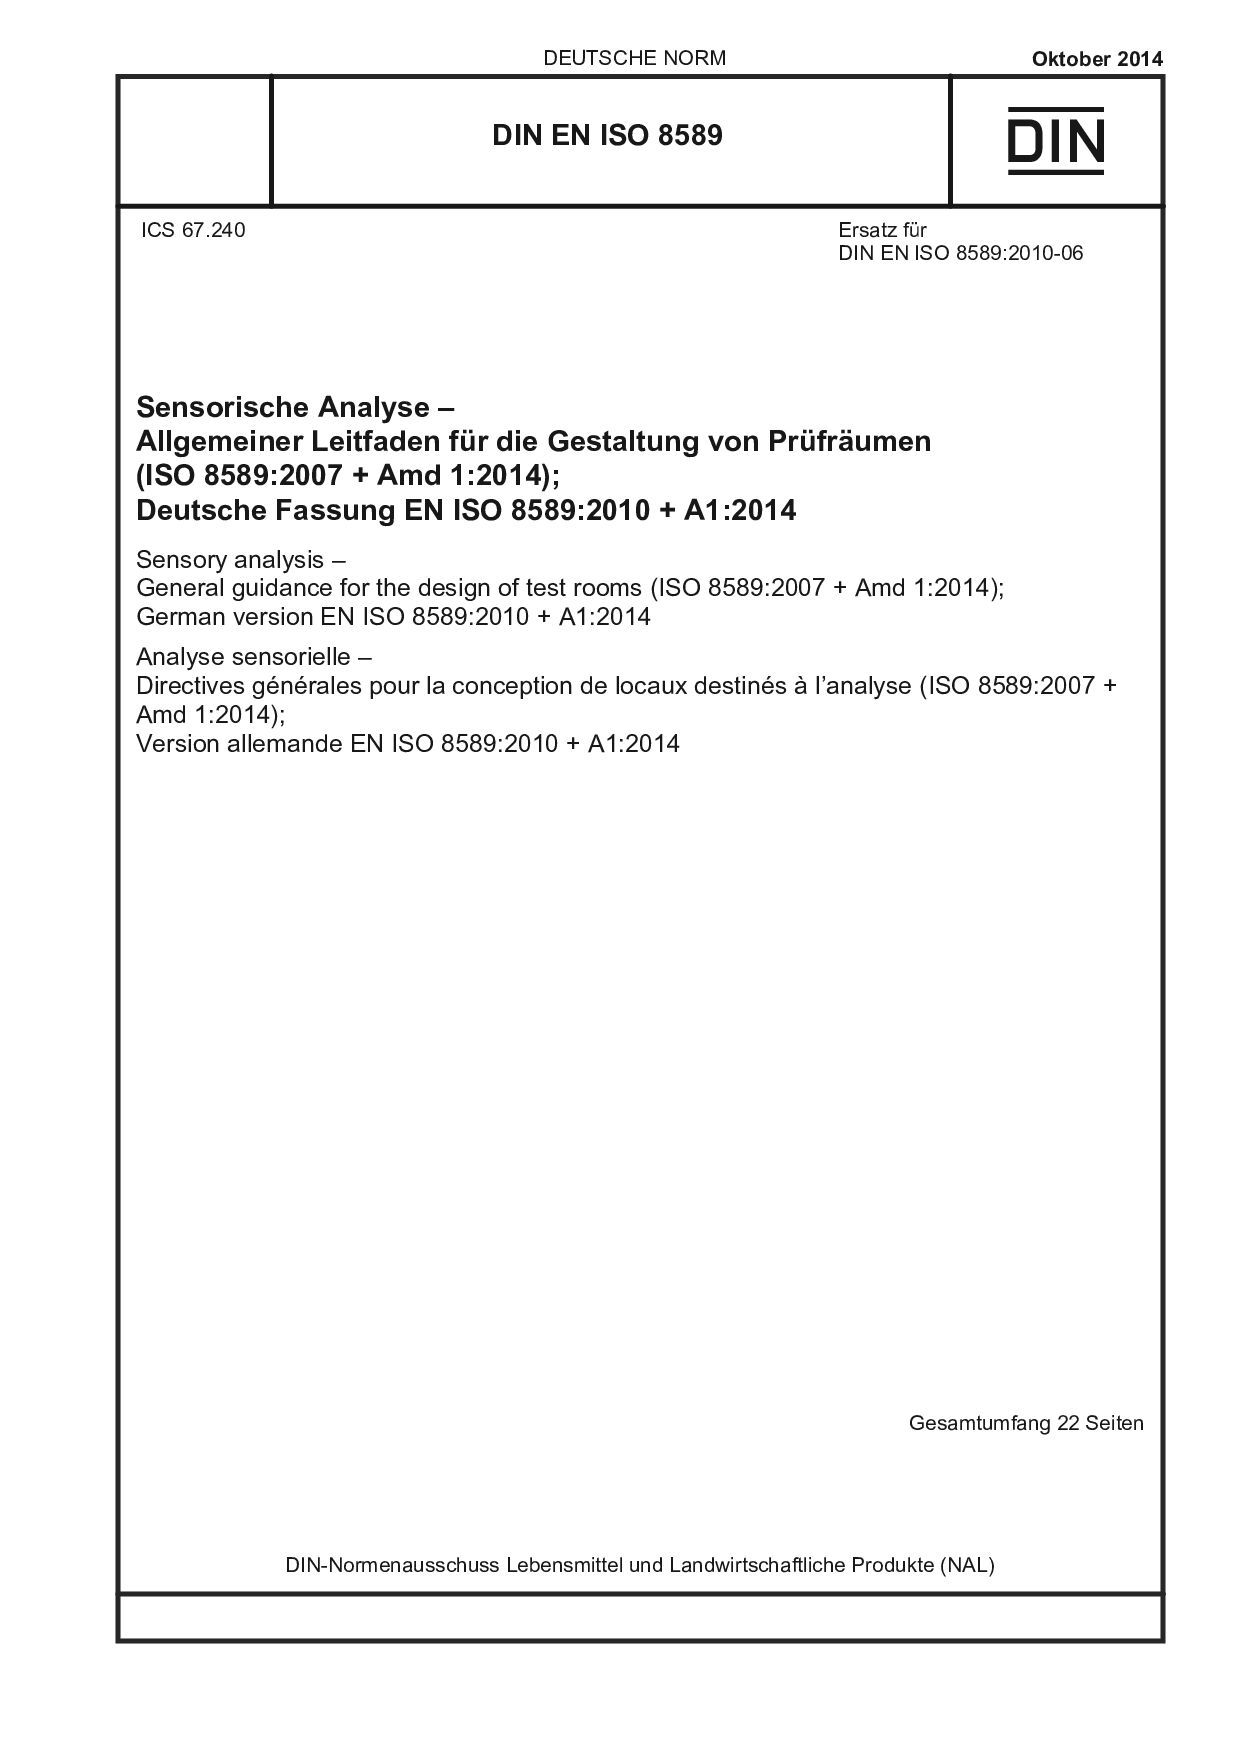 DIN EN ISO 8589:2014